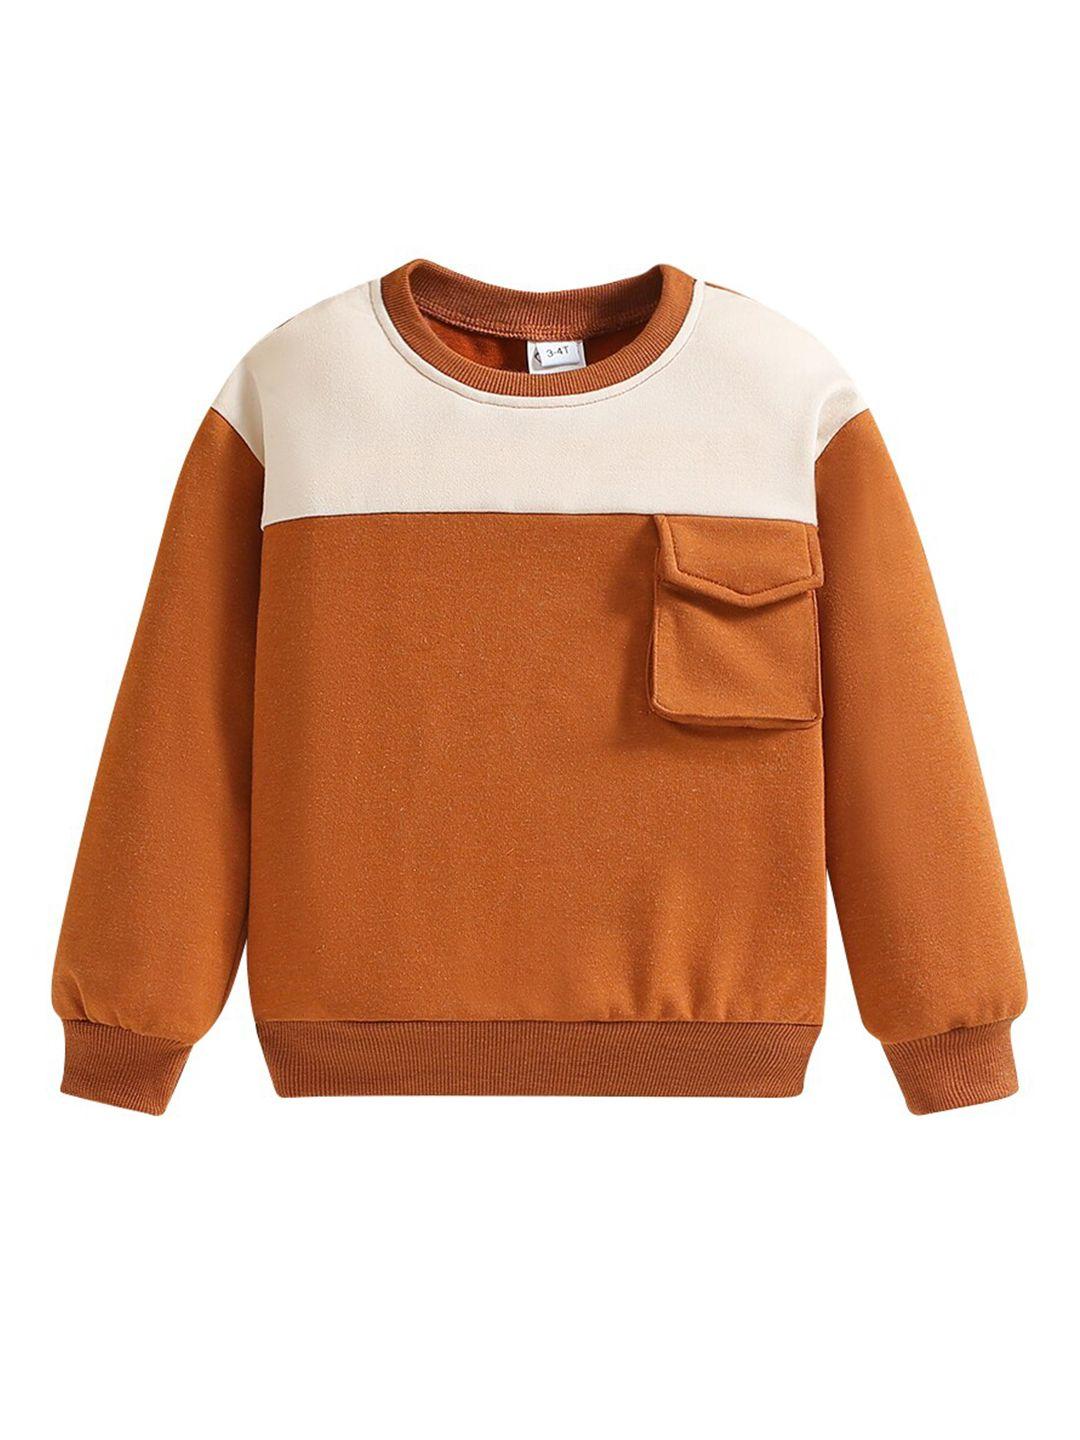 stylecast boys colourblocked cotton pullover sweatshirt